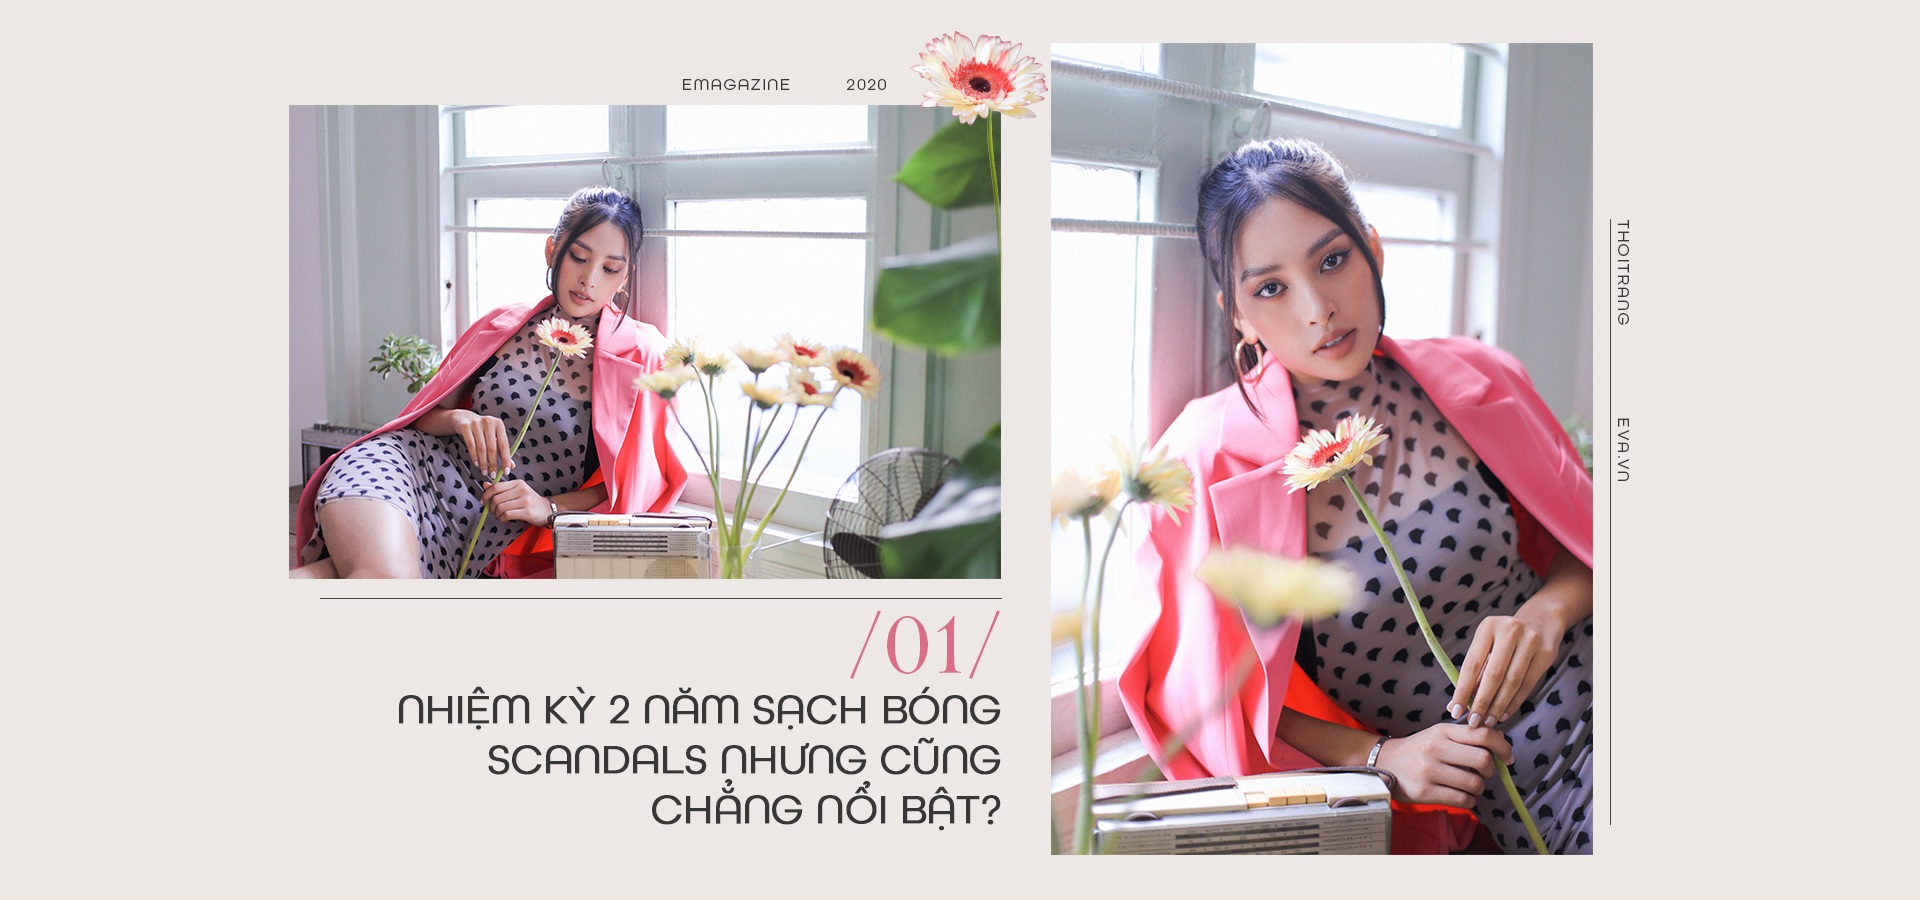 TIỂU VY: Tôi mơ hồ với danh xưng Hoa hậu đẹp nhất lịch sử Việt - 2